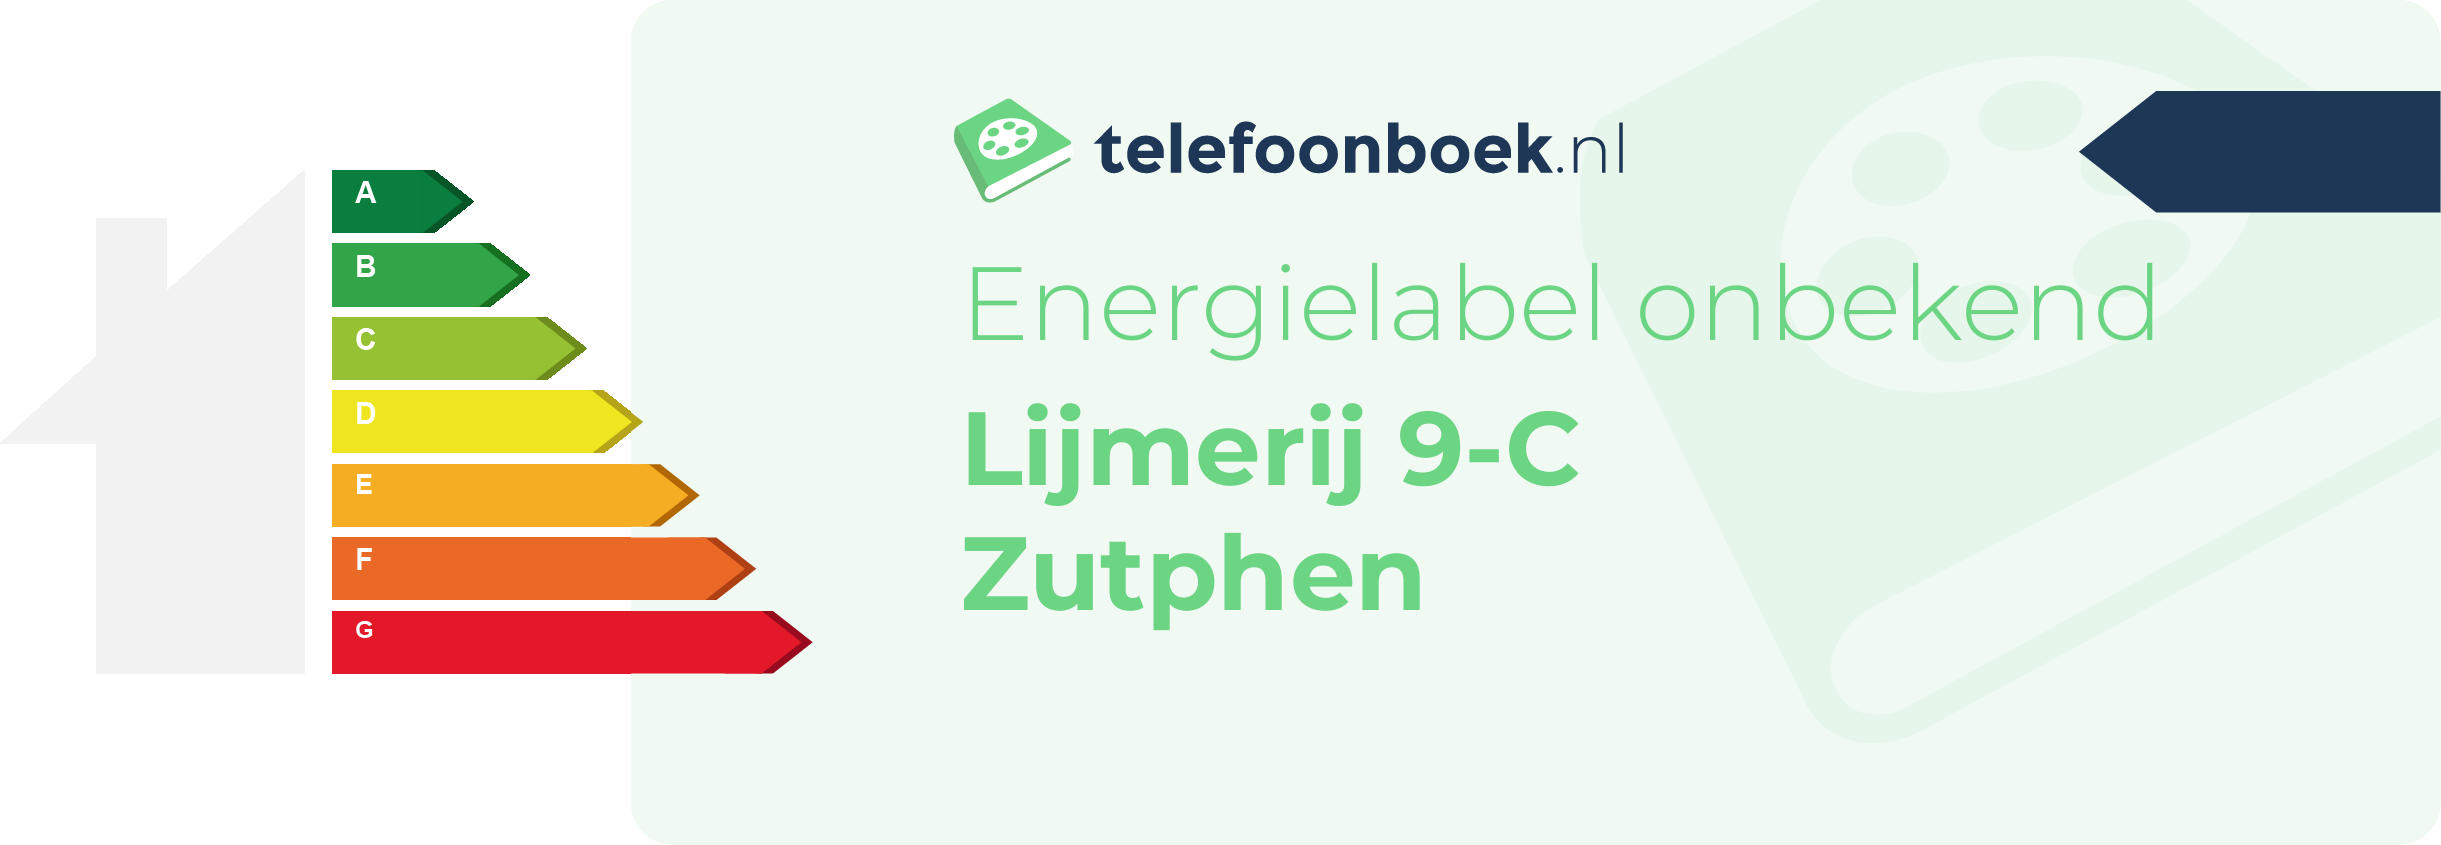 Energielabel Lijmerij 9-C Zutphen